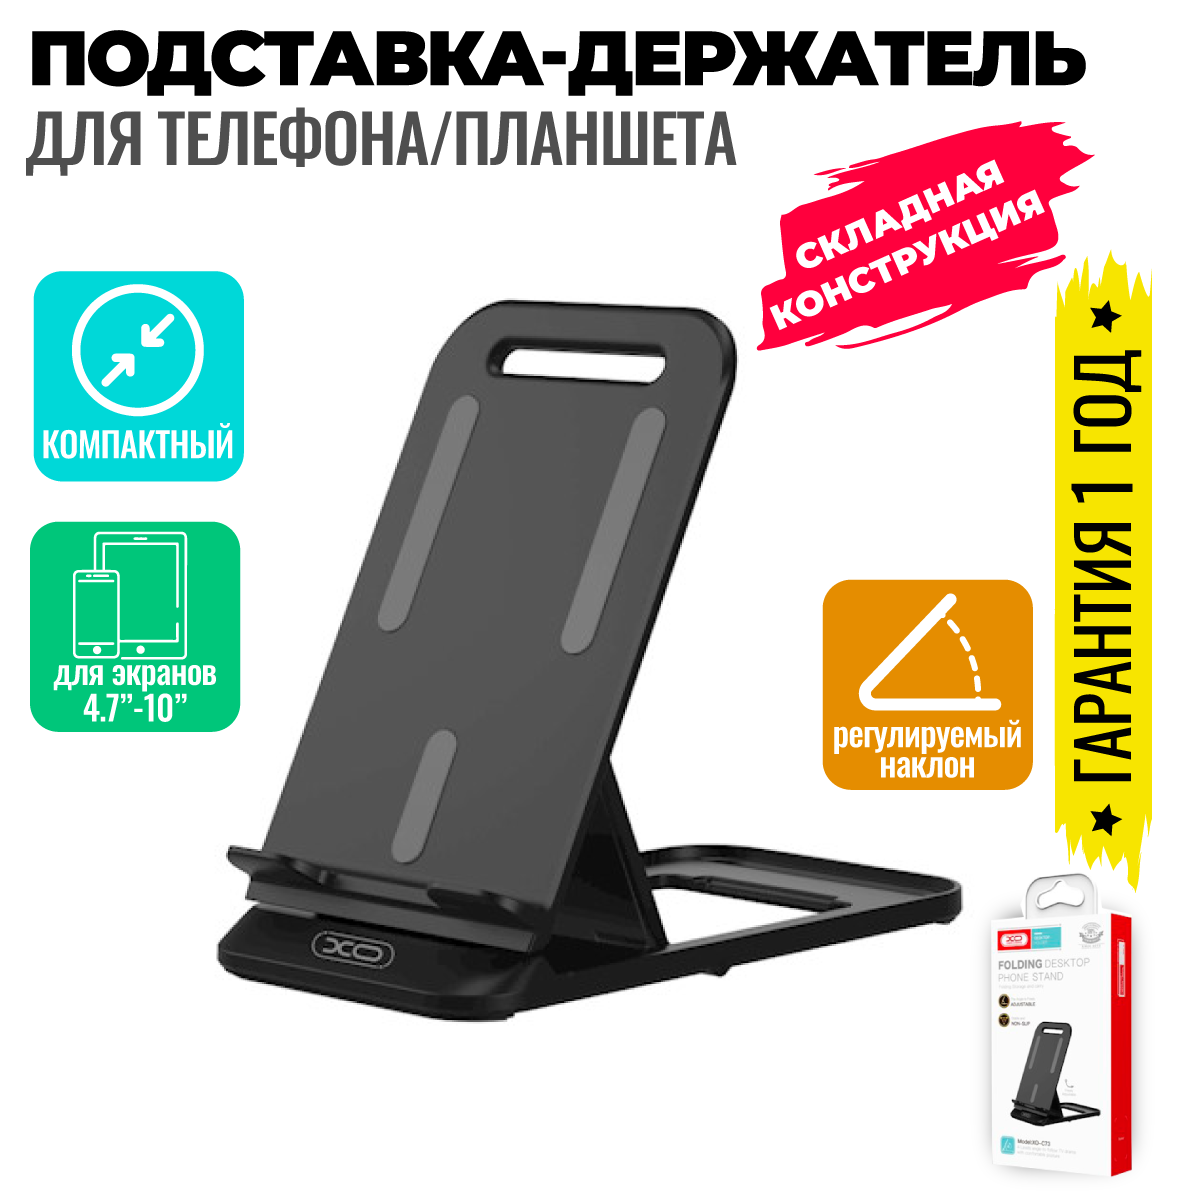 Подставка настольная для телефона регулируемая, универсальный держатель смартфона, планшета на стол / XO C73